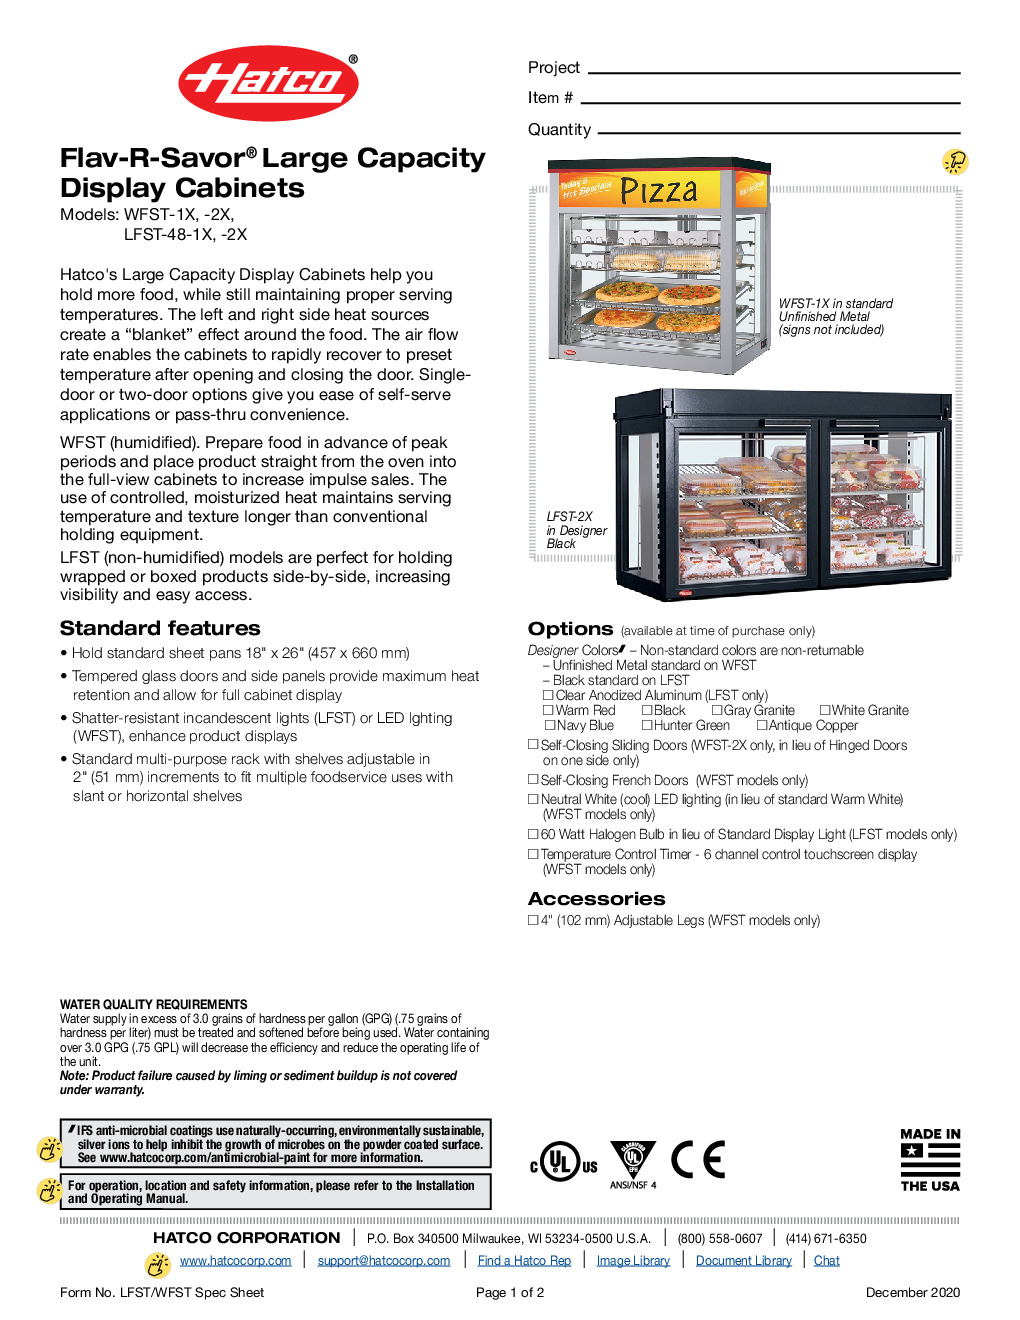 Hatco LFST-48-2X Countertop Hot Food Display Case